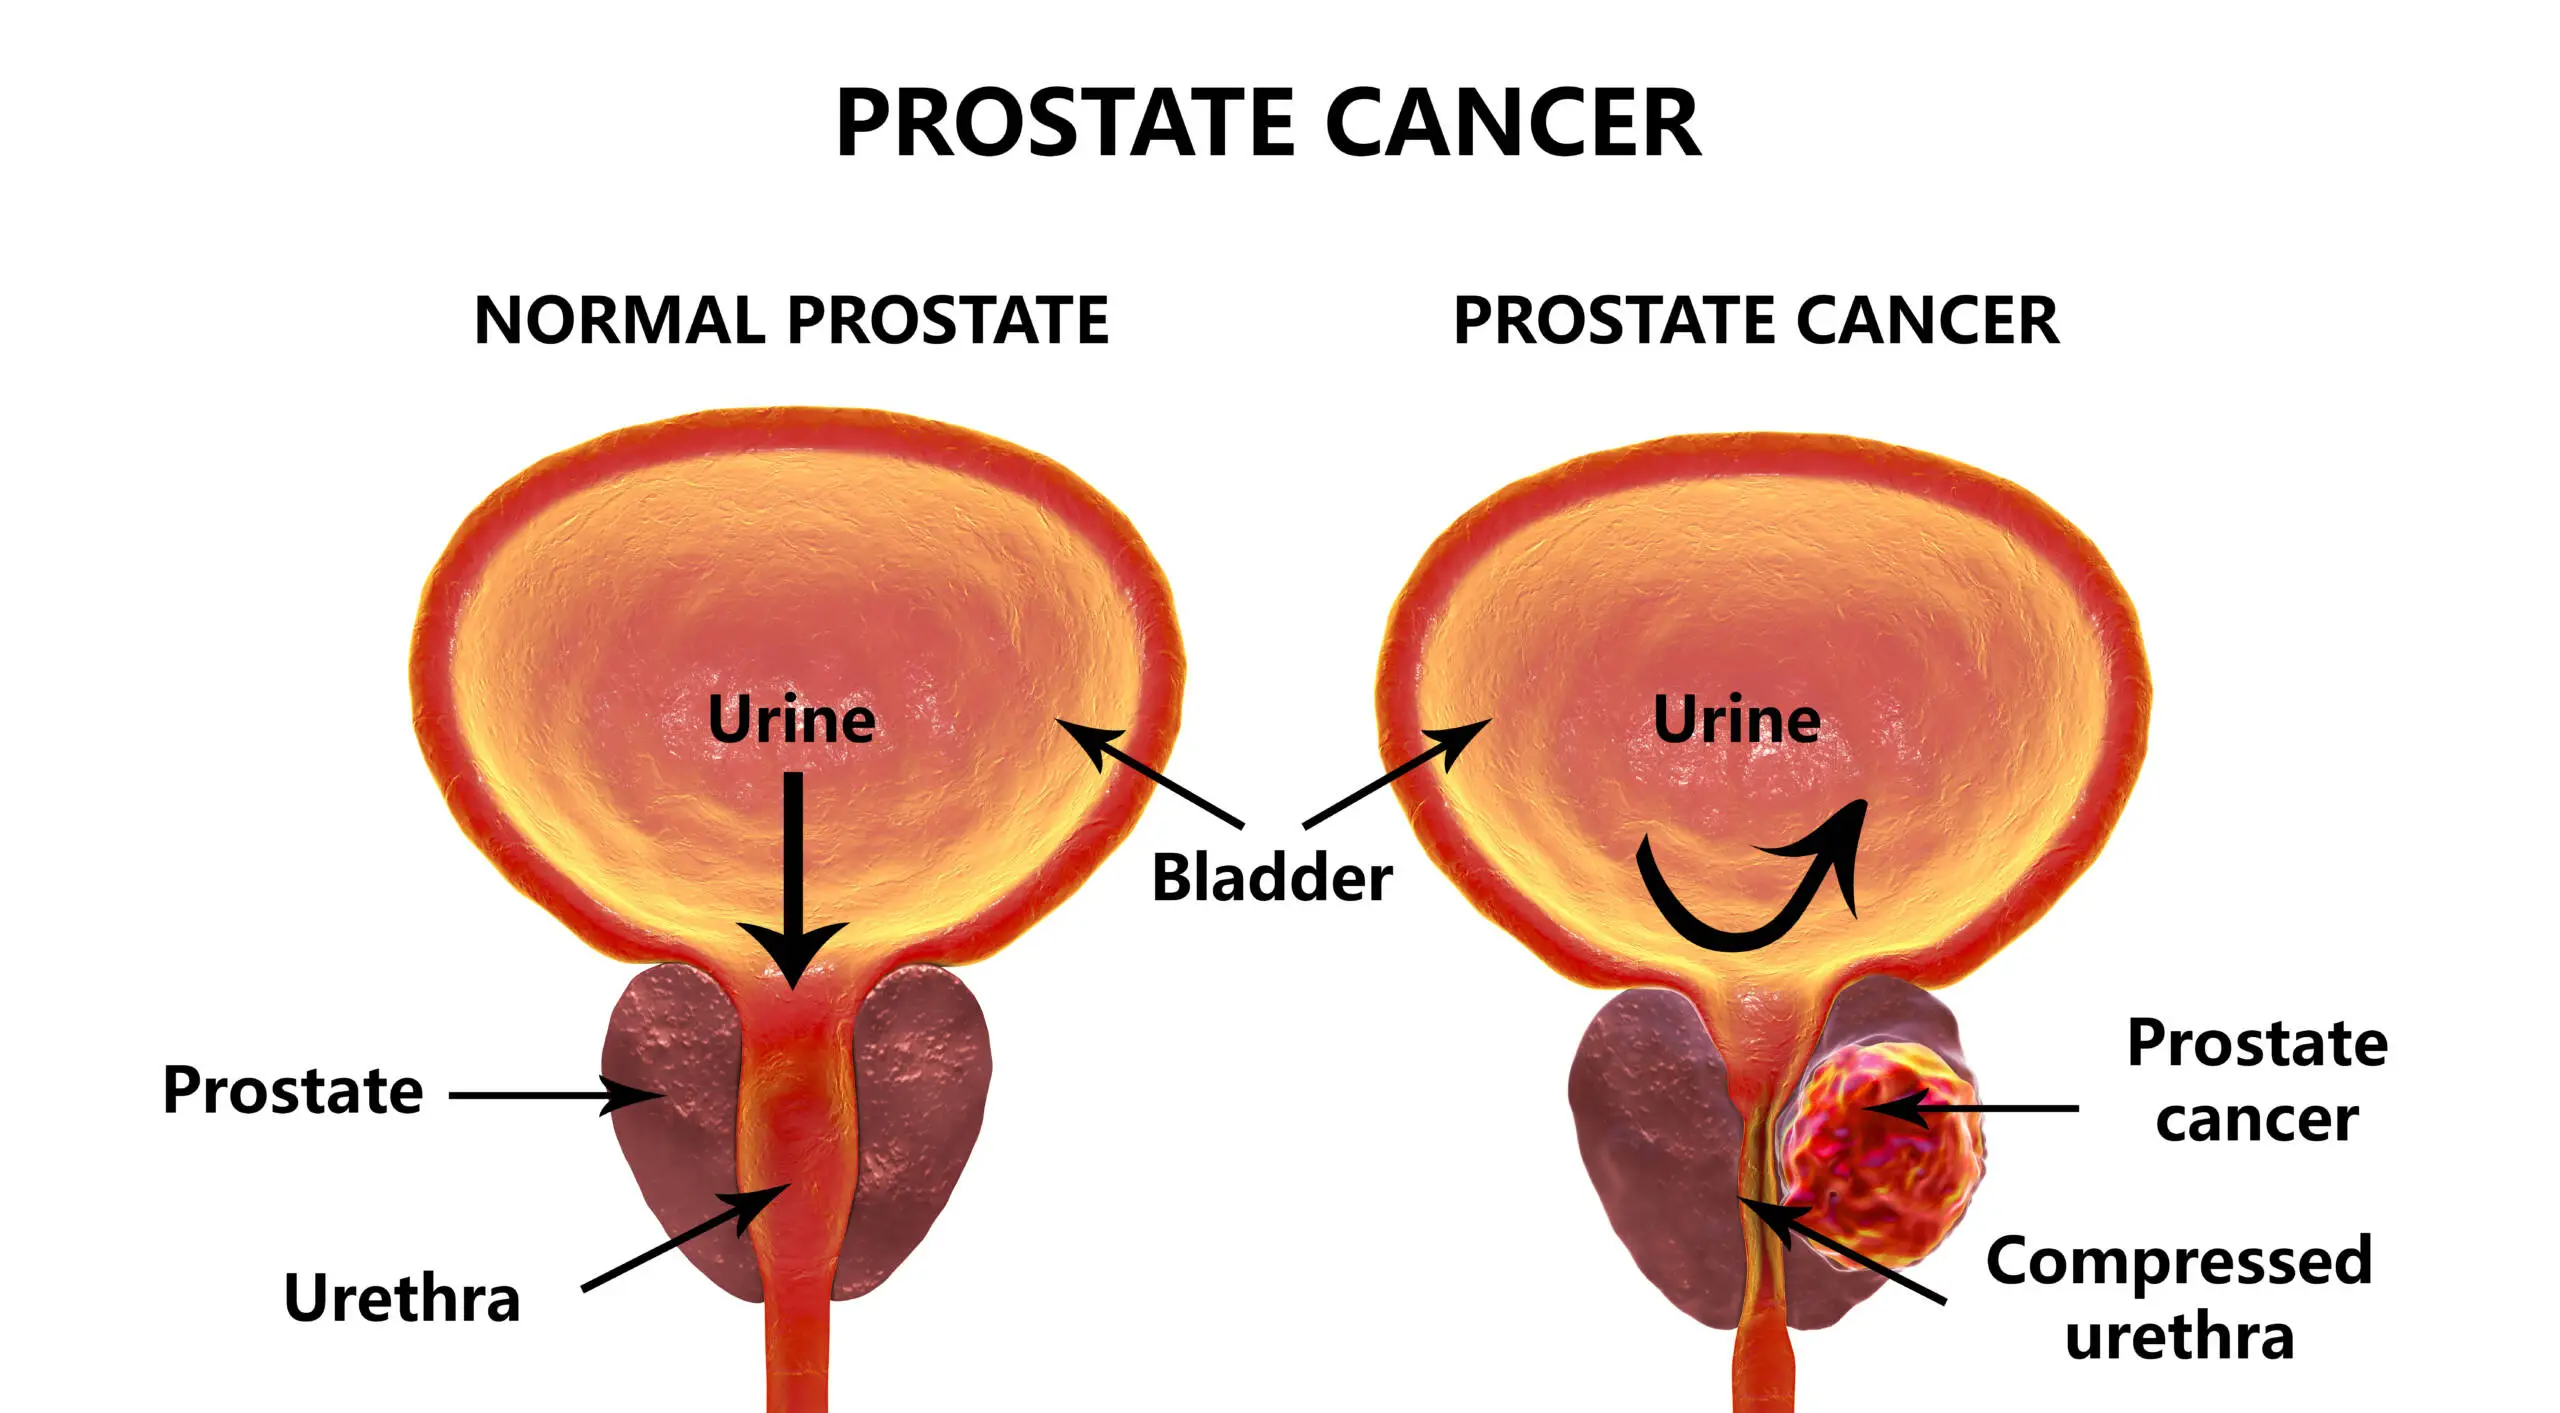 Let’s Beat Prostate Cancer Together